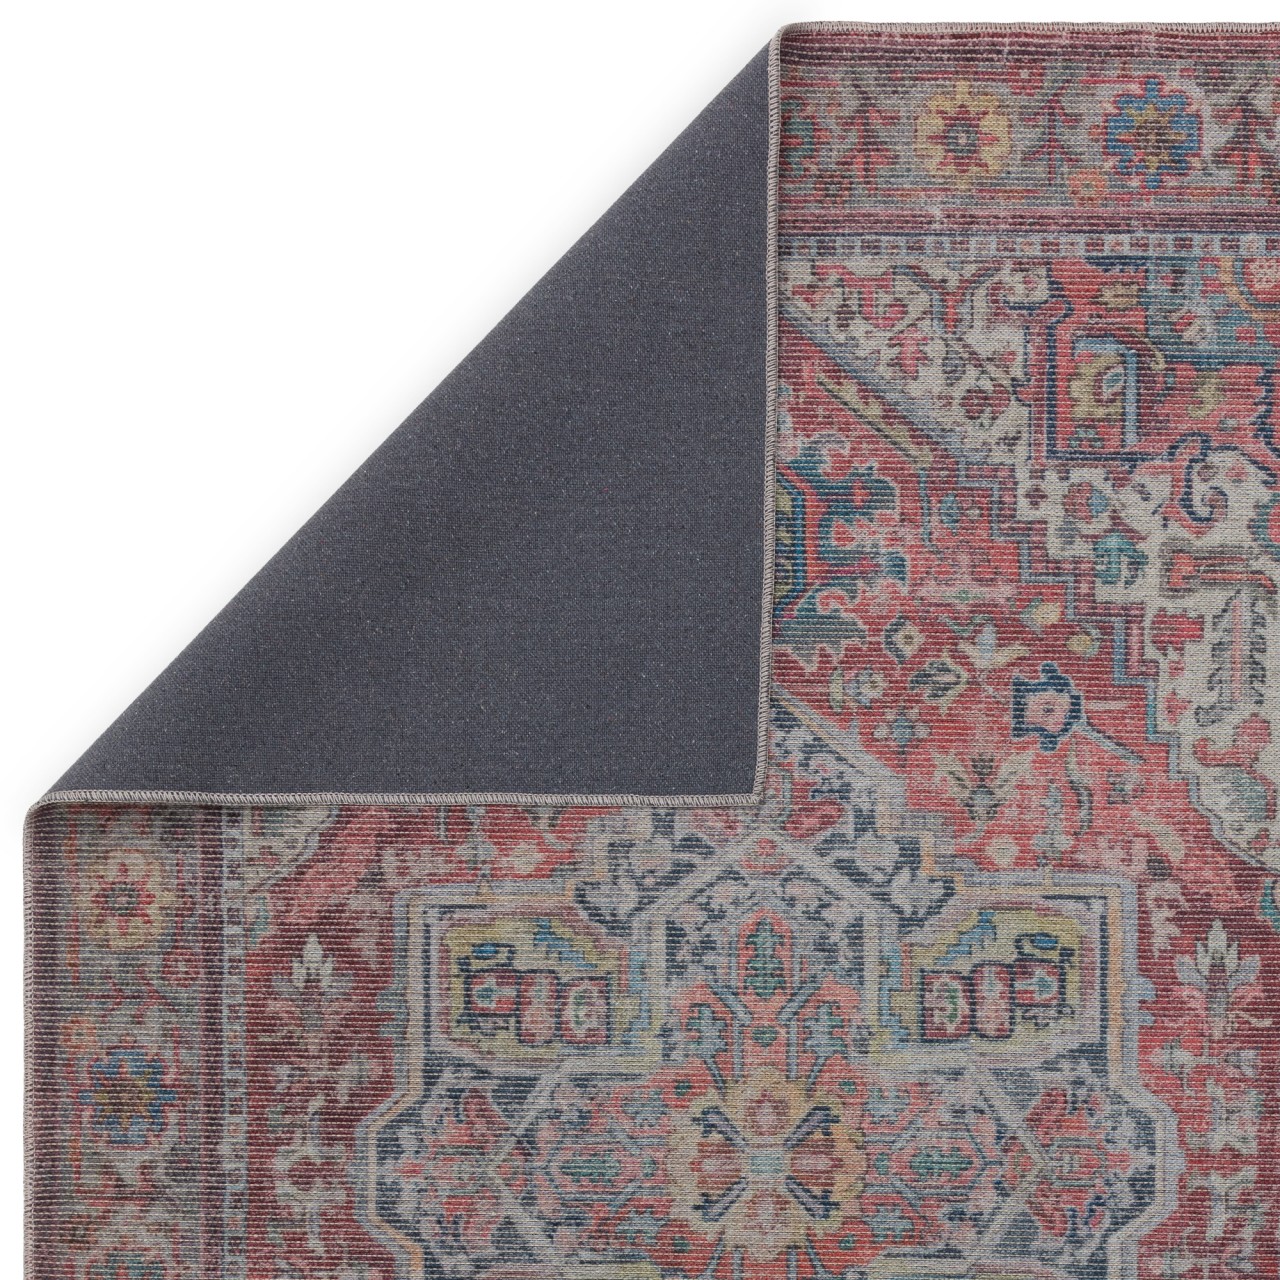 Um toque de luxo na sua casa! O tapete Kaya Iman traz conforto e elegância a qualquer espaço!